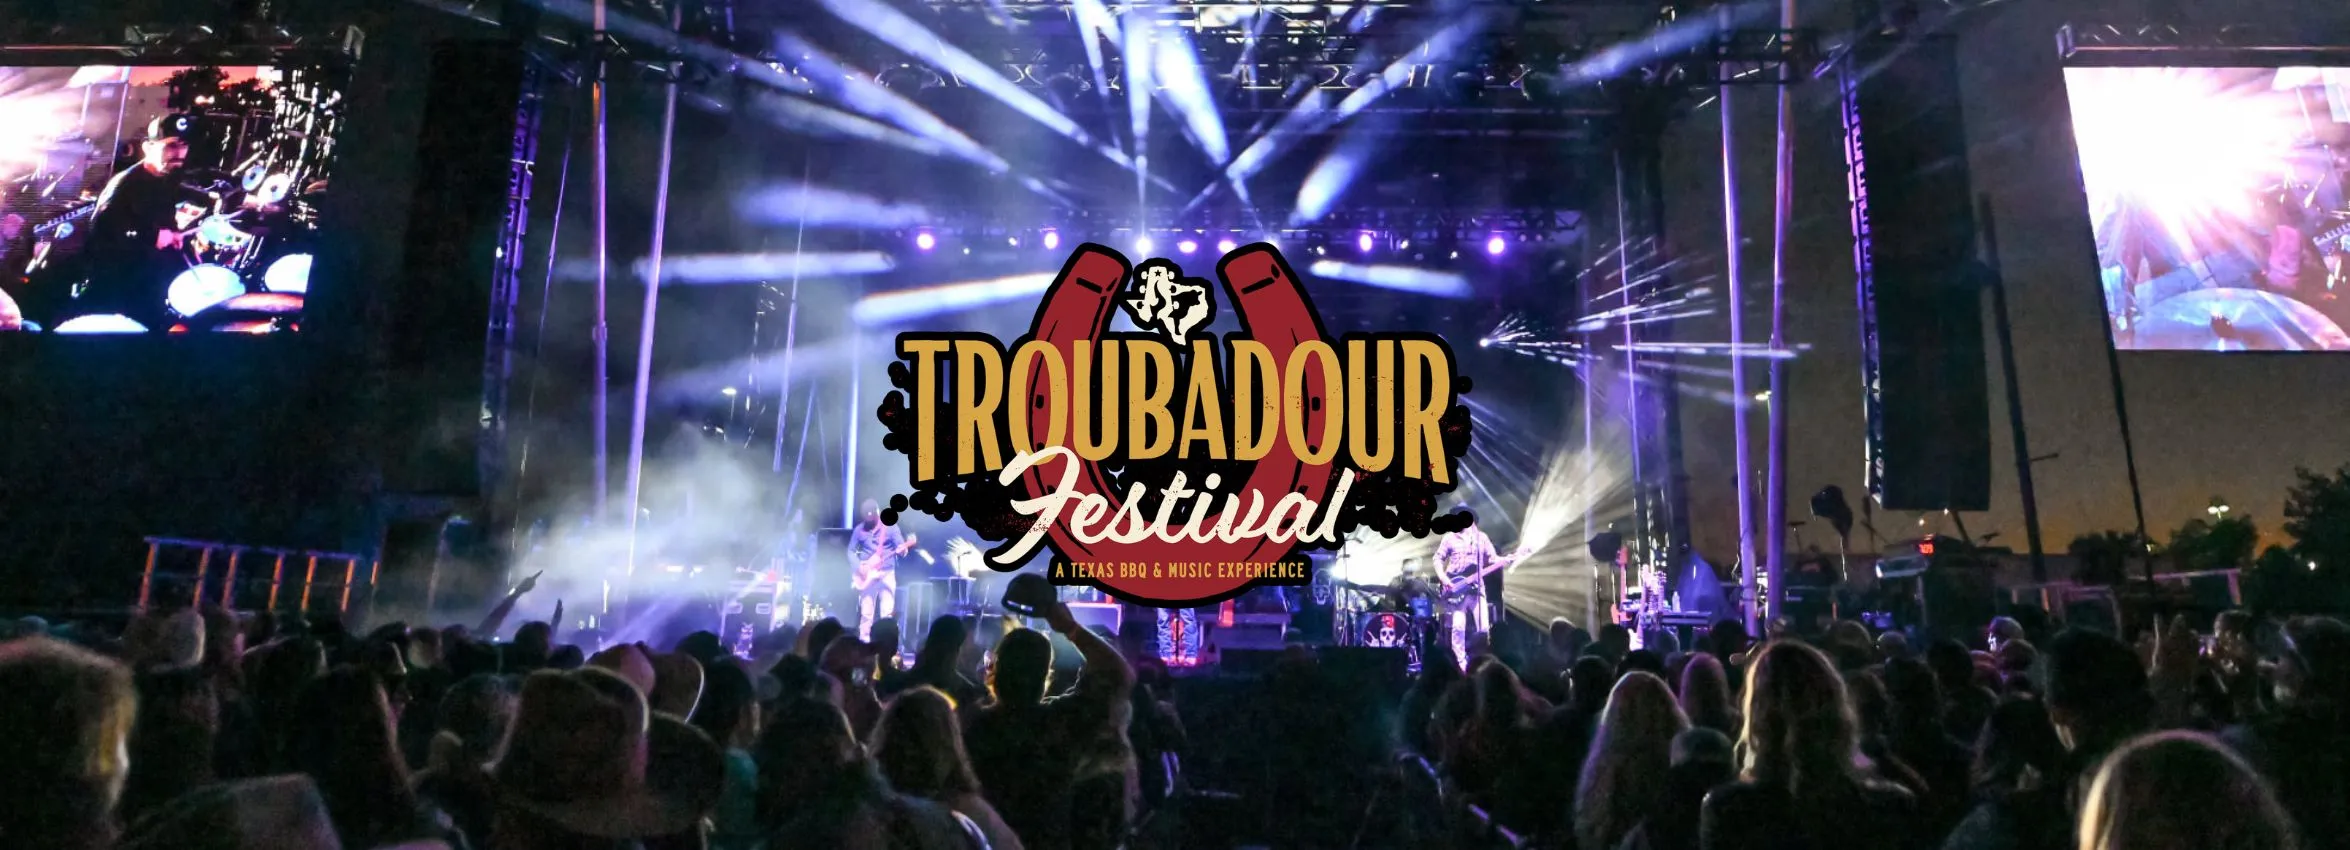 Troubadour-Festival_Desktop_ET